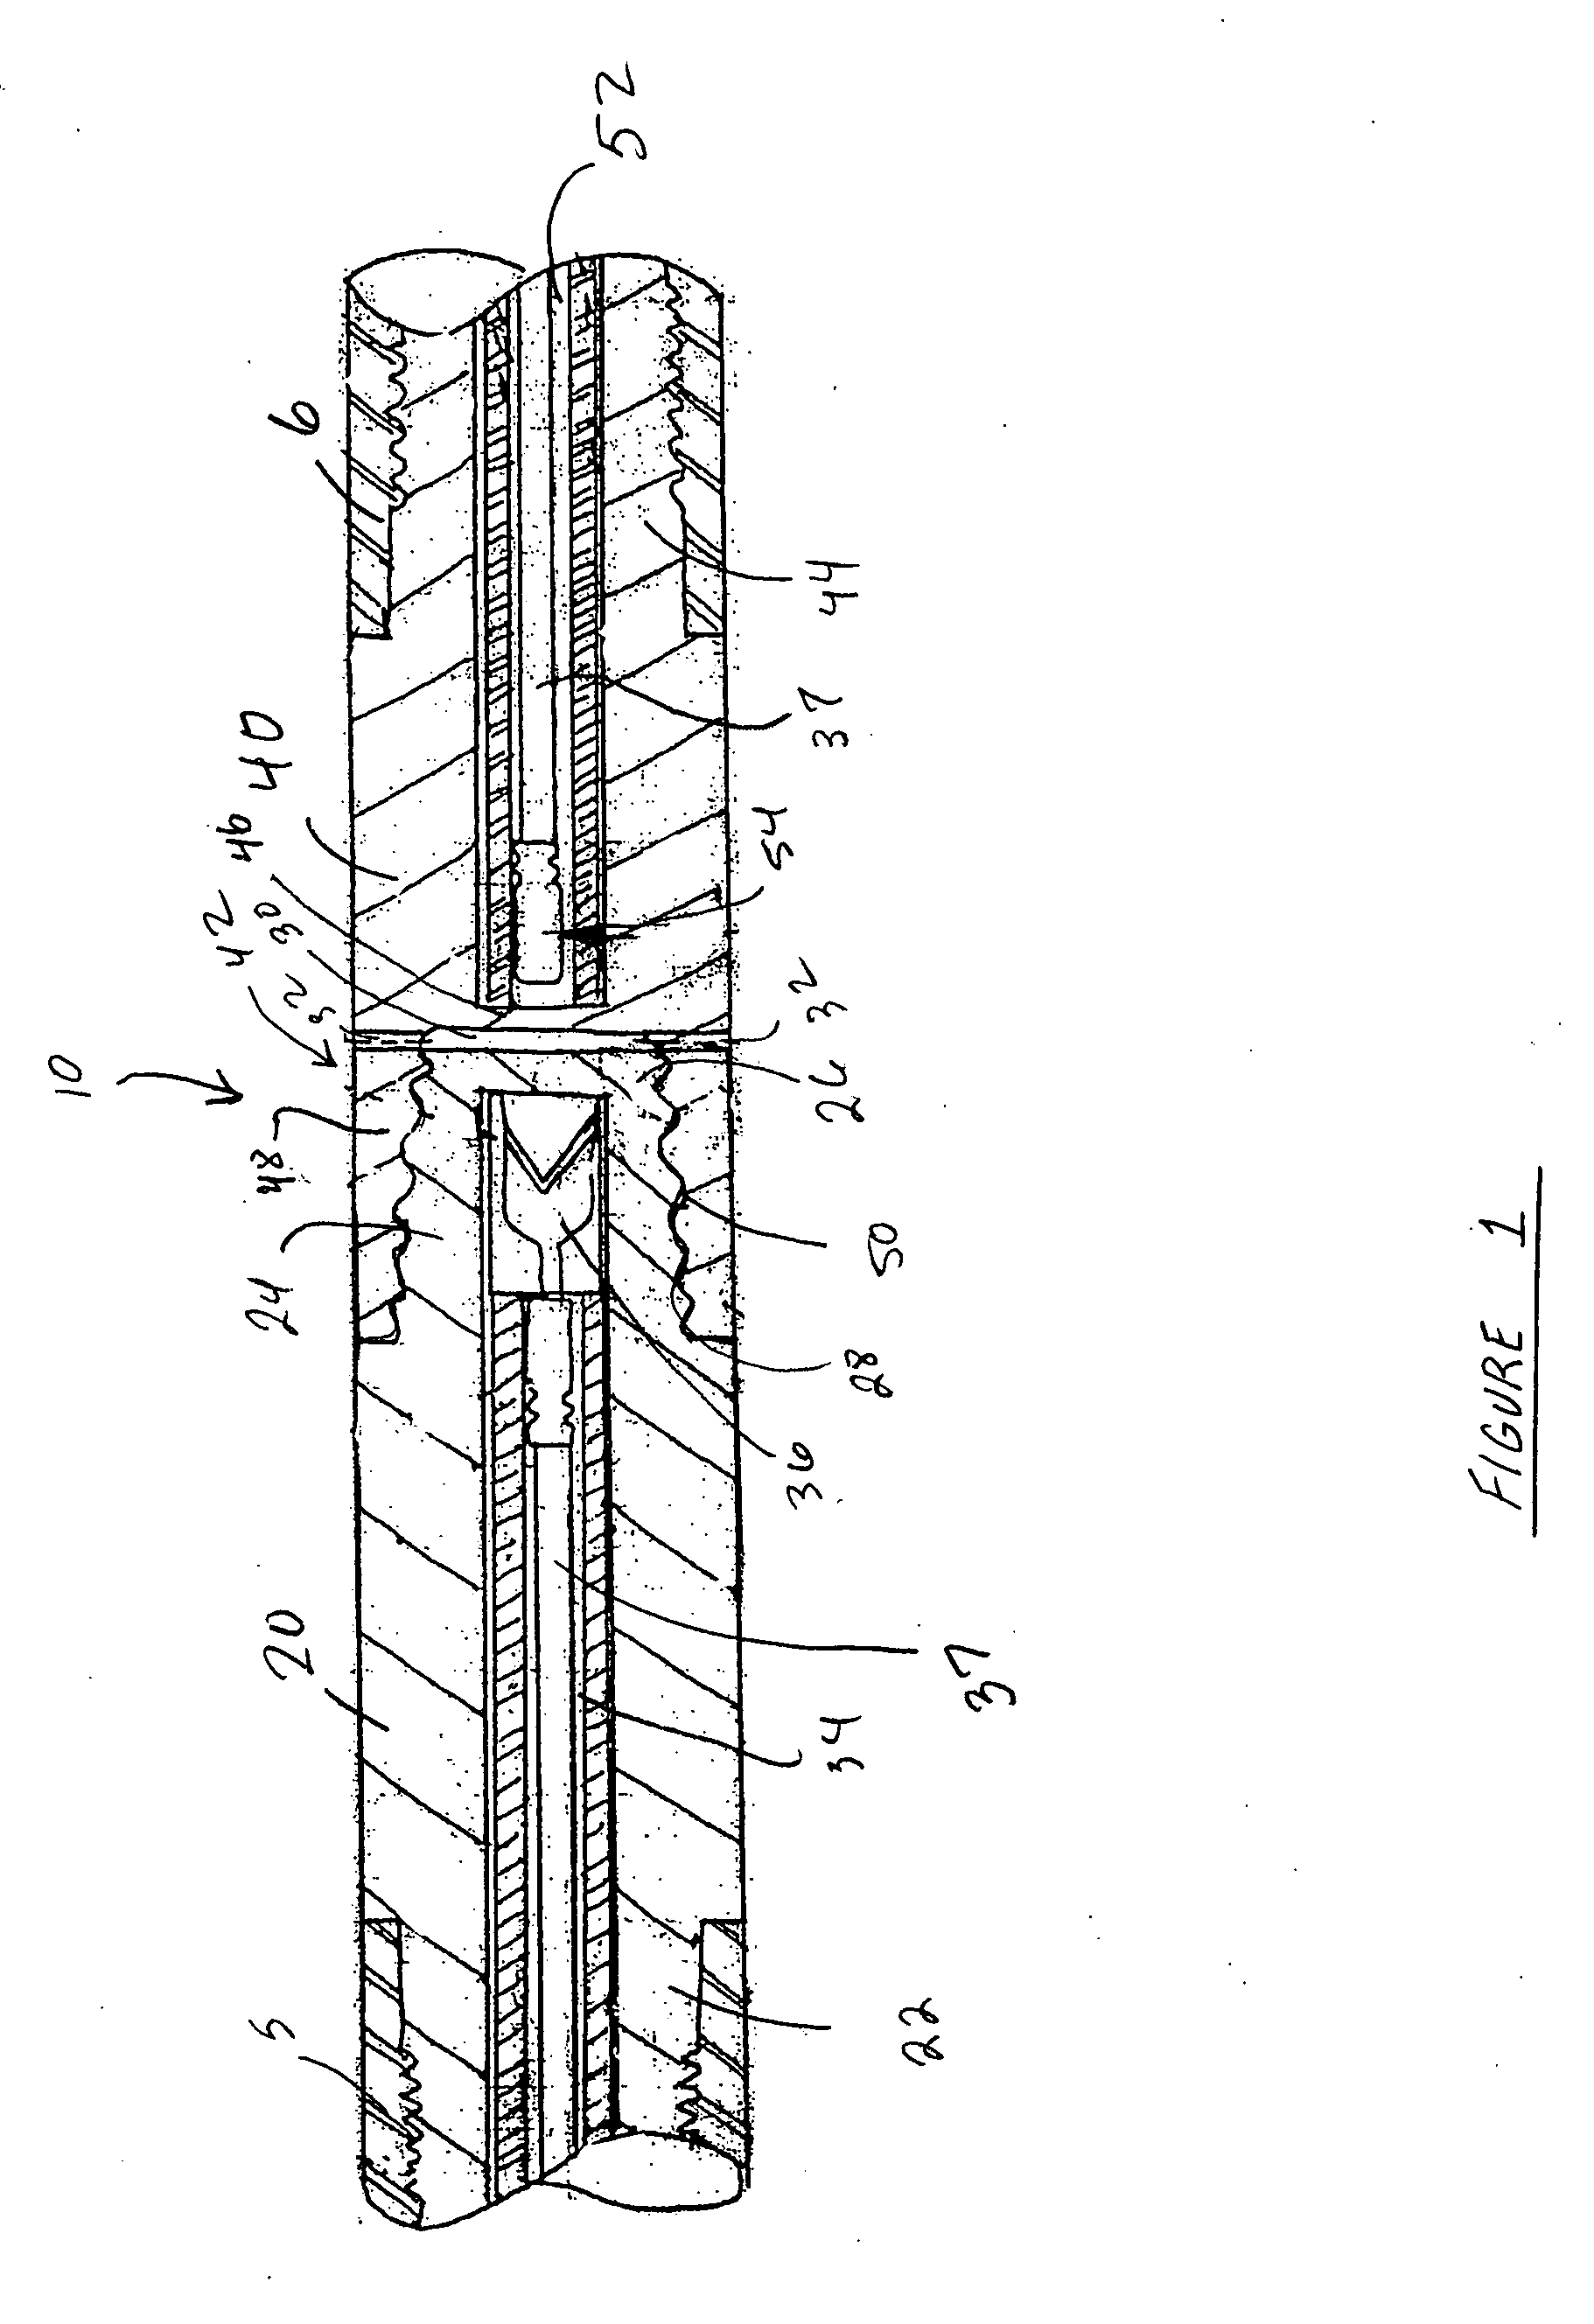 Connector for perforating gun tandem